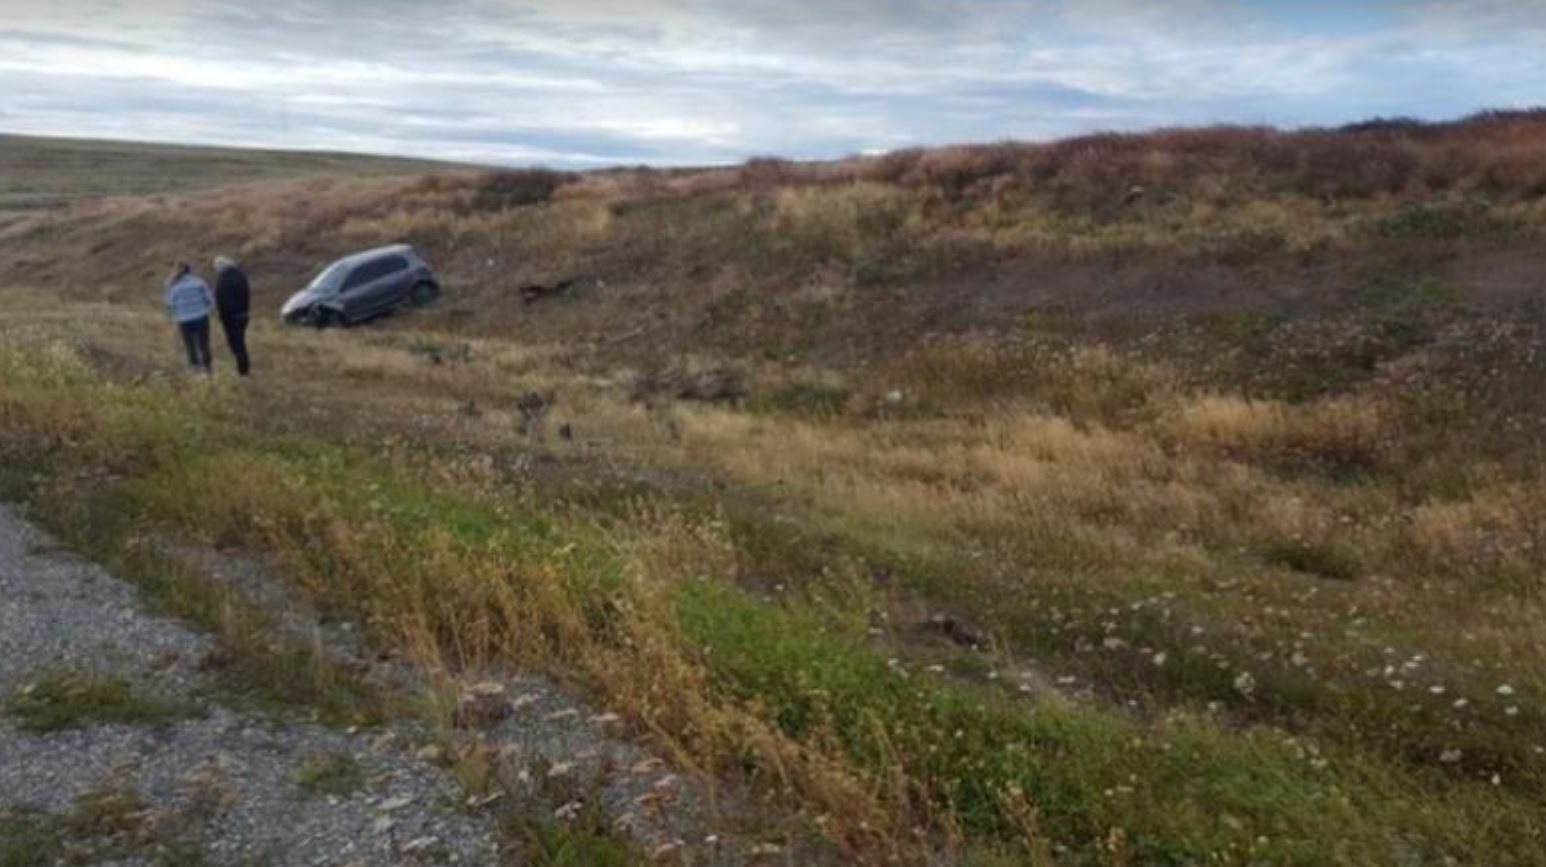 El vehículo fue abandonado en la autopista kilómetros después que el agresor haya dejado libre a las dos jóvenes. (Foto Prensa Libre: El Doce)